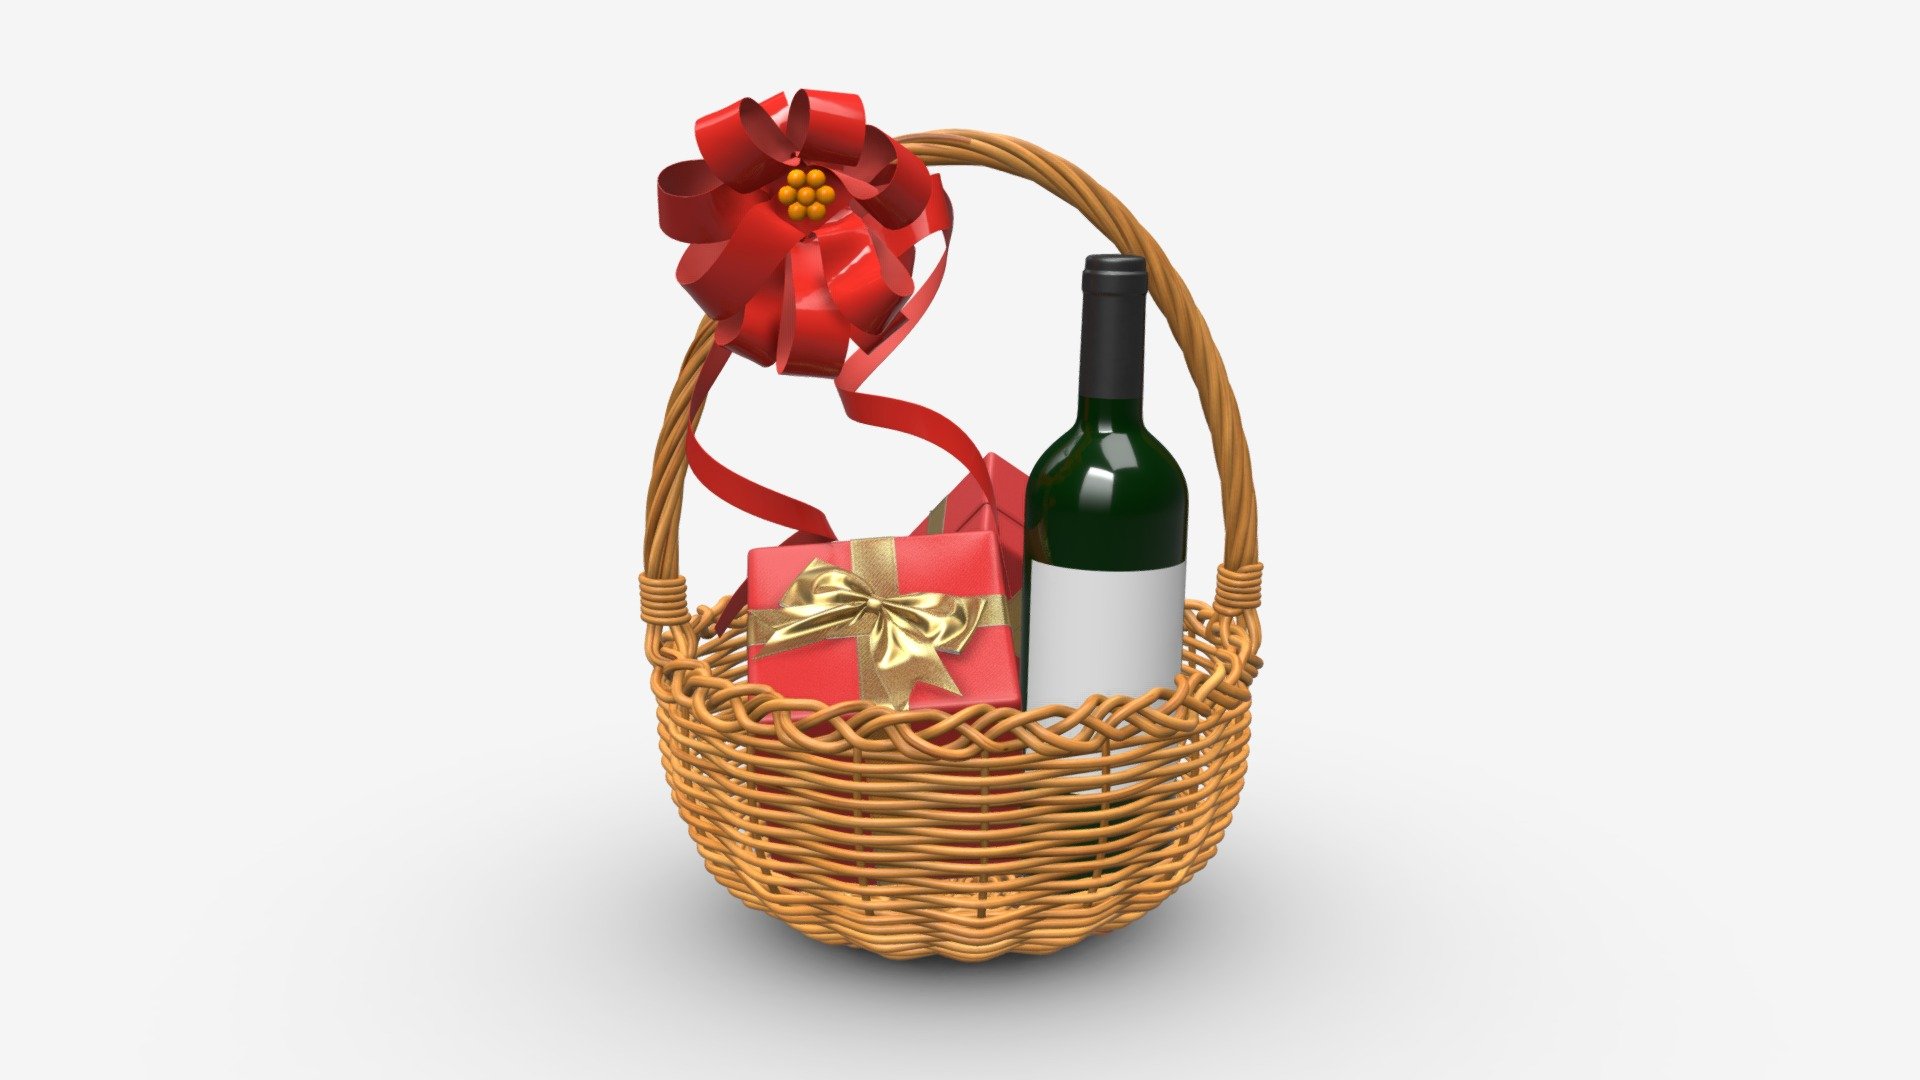 Wine bottle in wicker wooden basket 01 - Buy Royalty Free 3D model by HQ3DMOD (@AivisAstics) 3d model